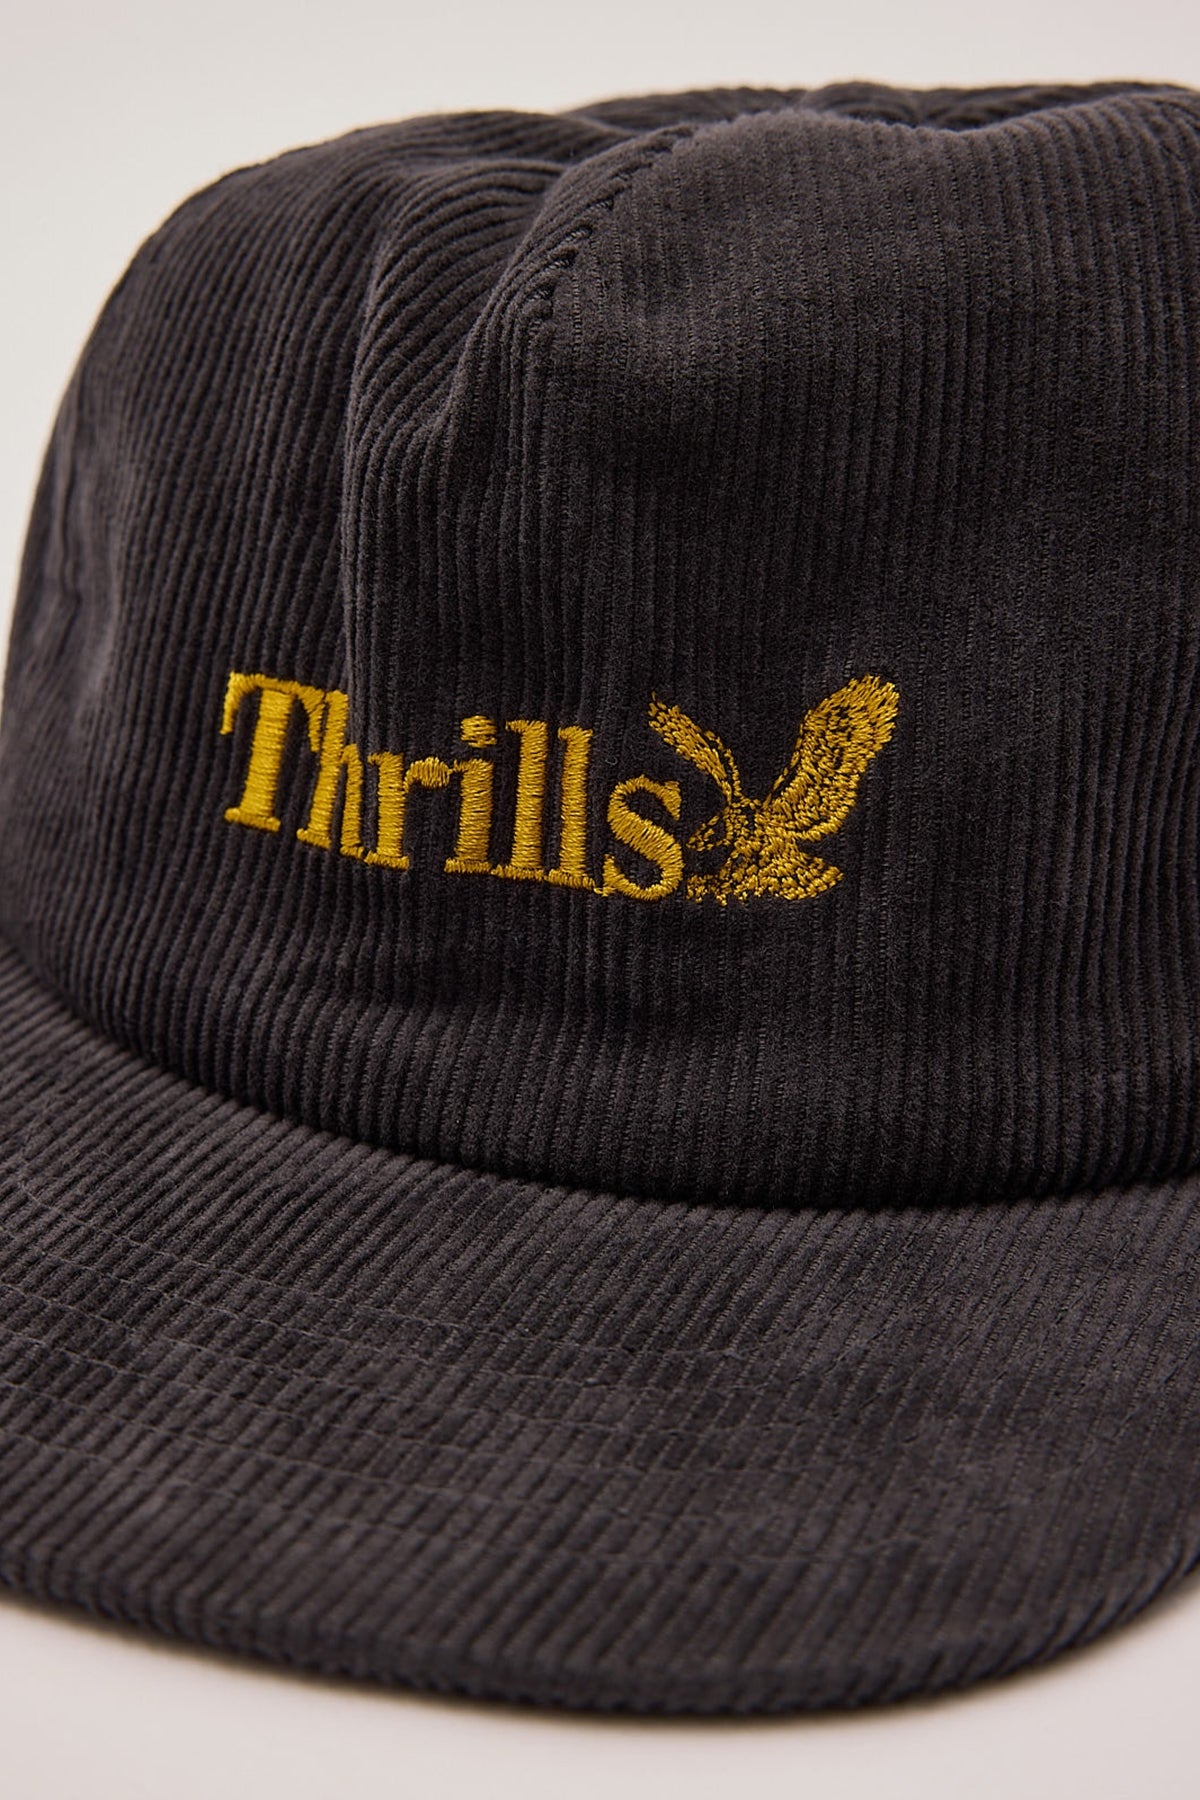 Thrills Thrills Workwear 5 Panel Cap Dark Charcoal